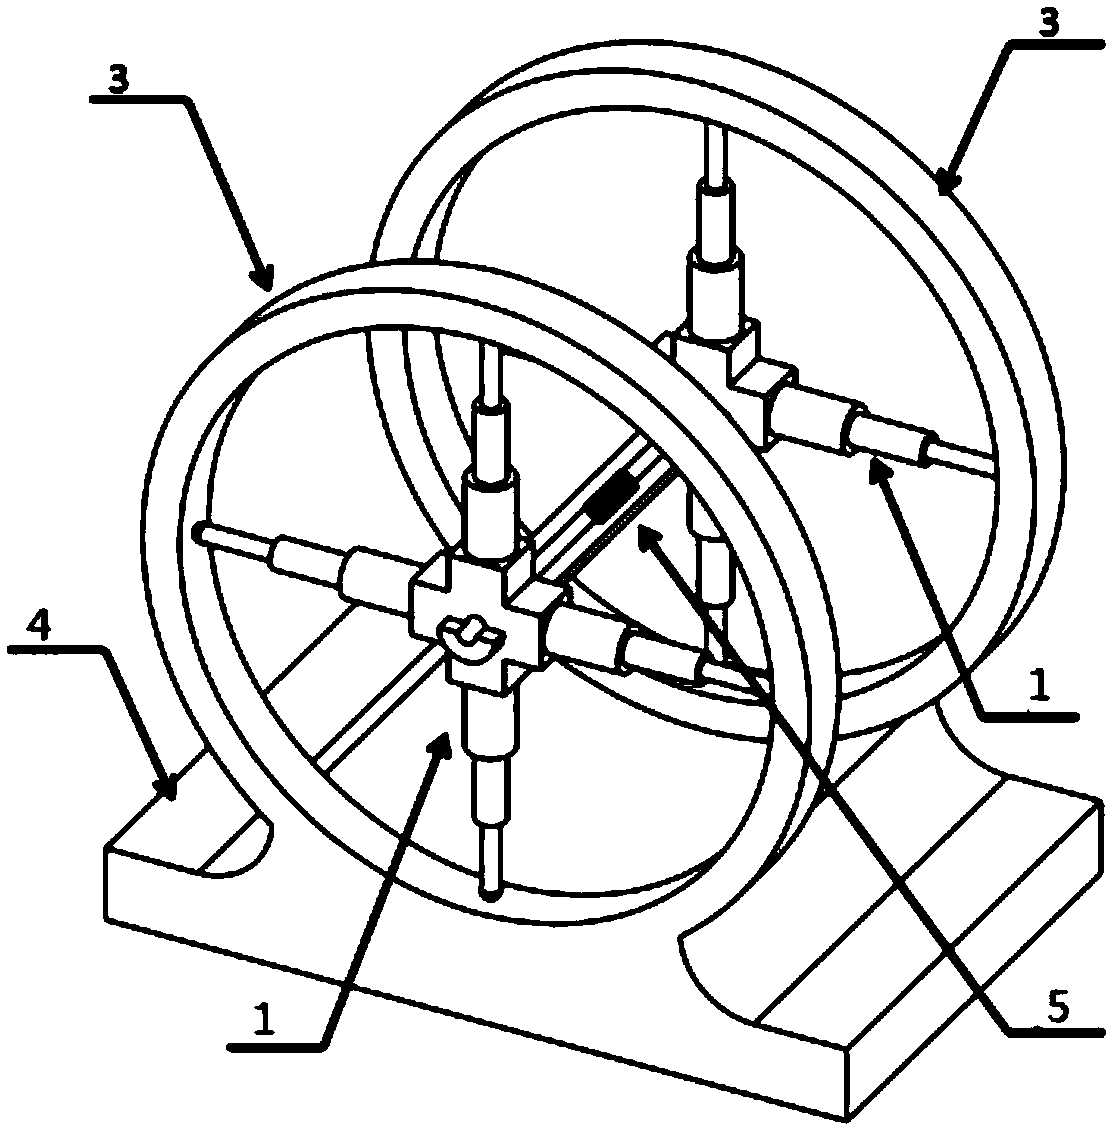 Test piece fixture for Helmholtz coil testing